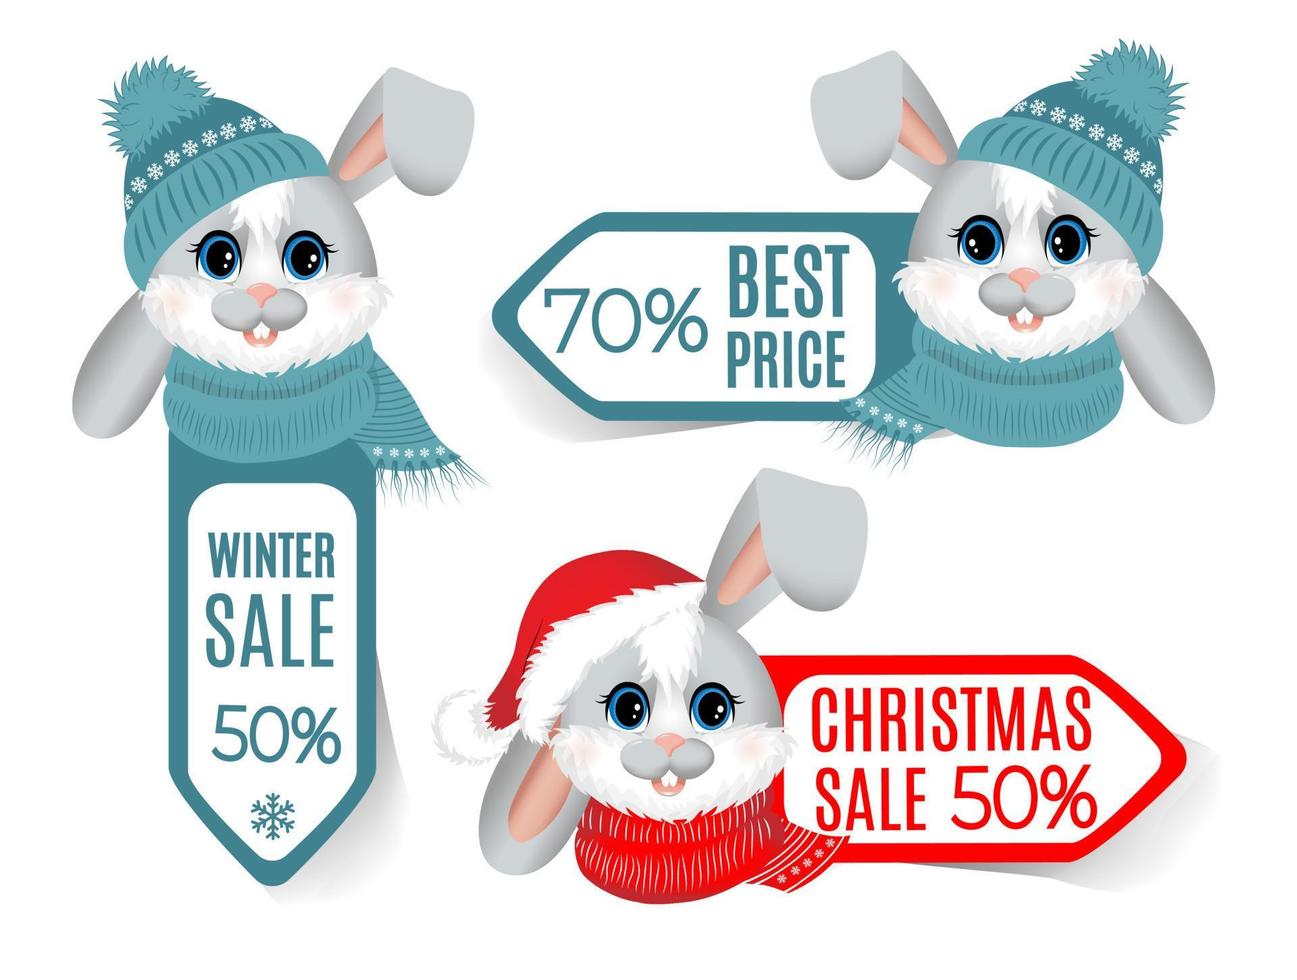 establecer etiqueta de invierno, venta de etiquetas con cabeza de liebre o conejo. vector